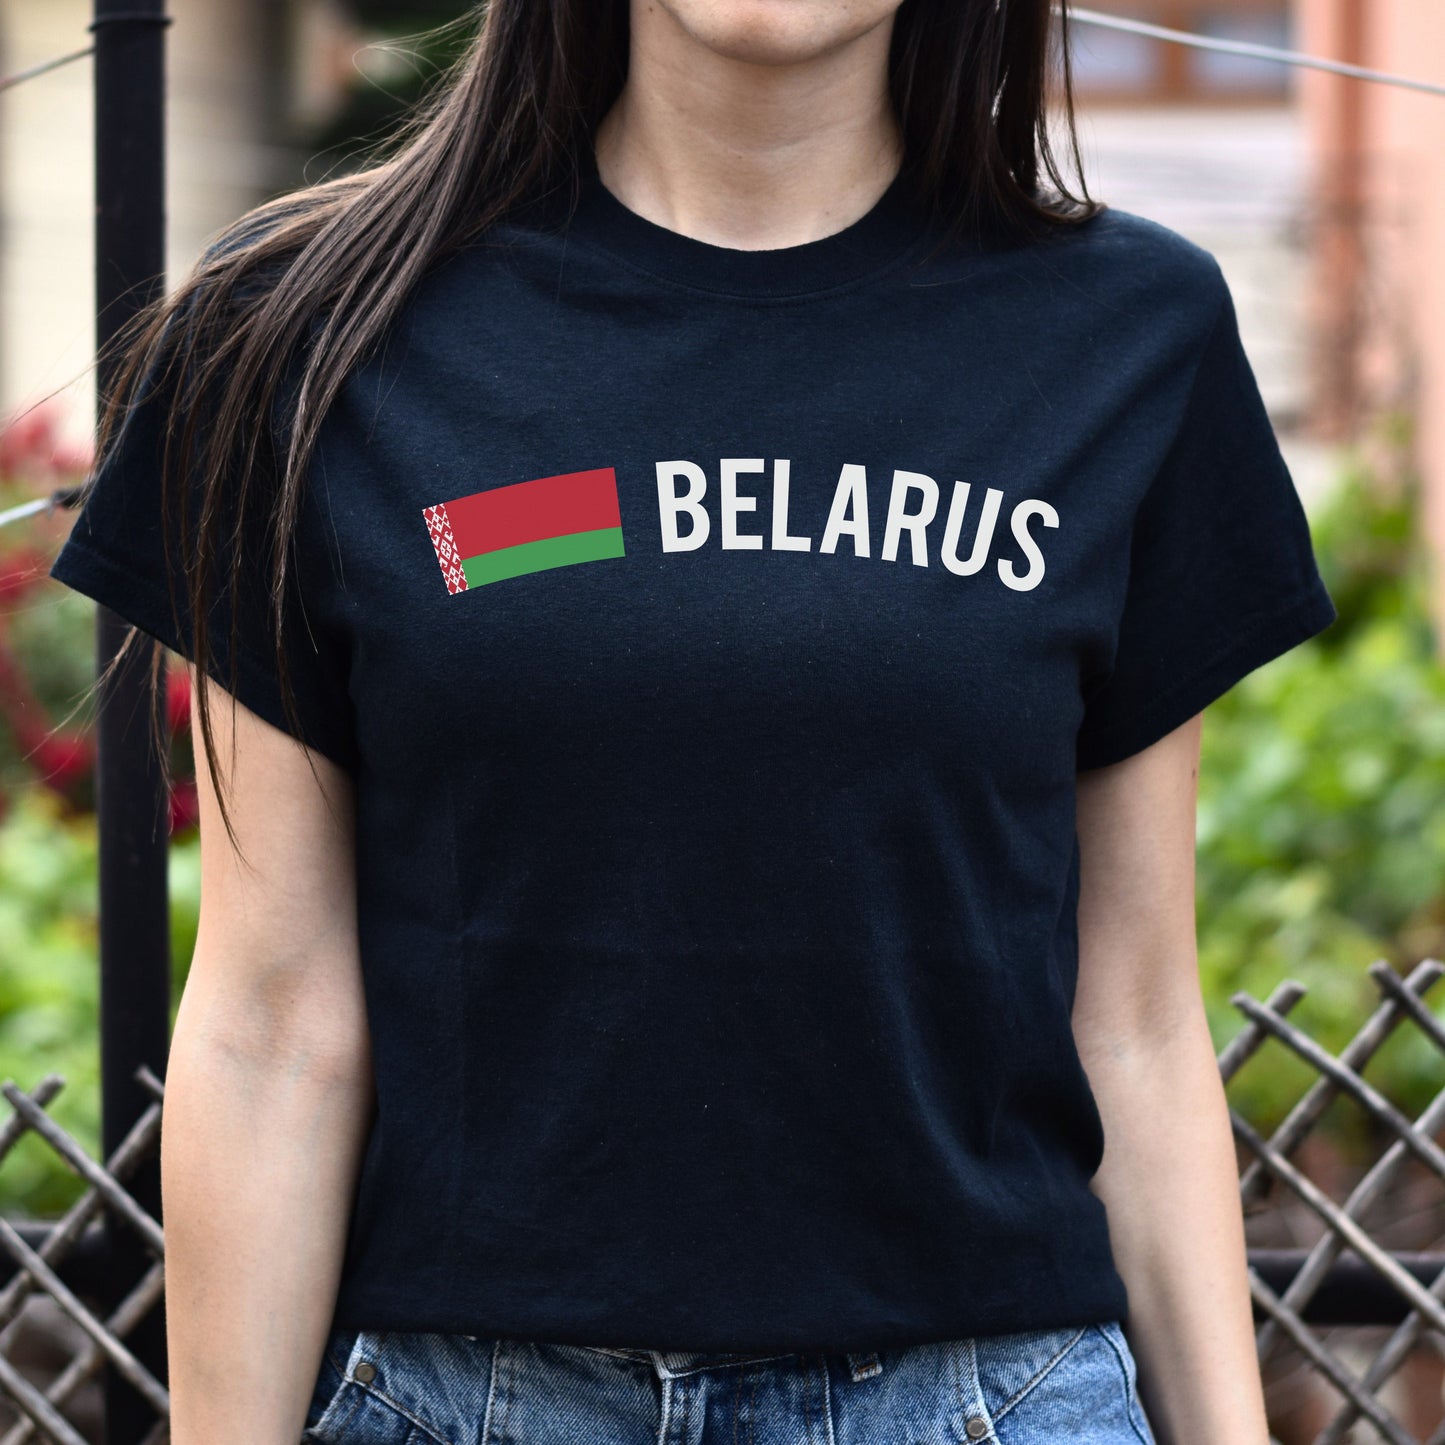 Belarus Unisex T-shirt gift Belarussian flag tee Minsk White Black Dark Heather-Black-Family-Gift-Planet